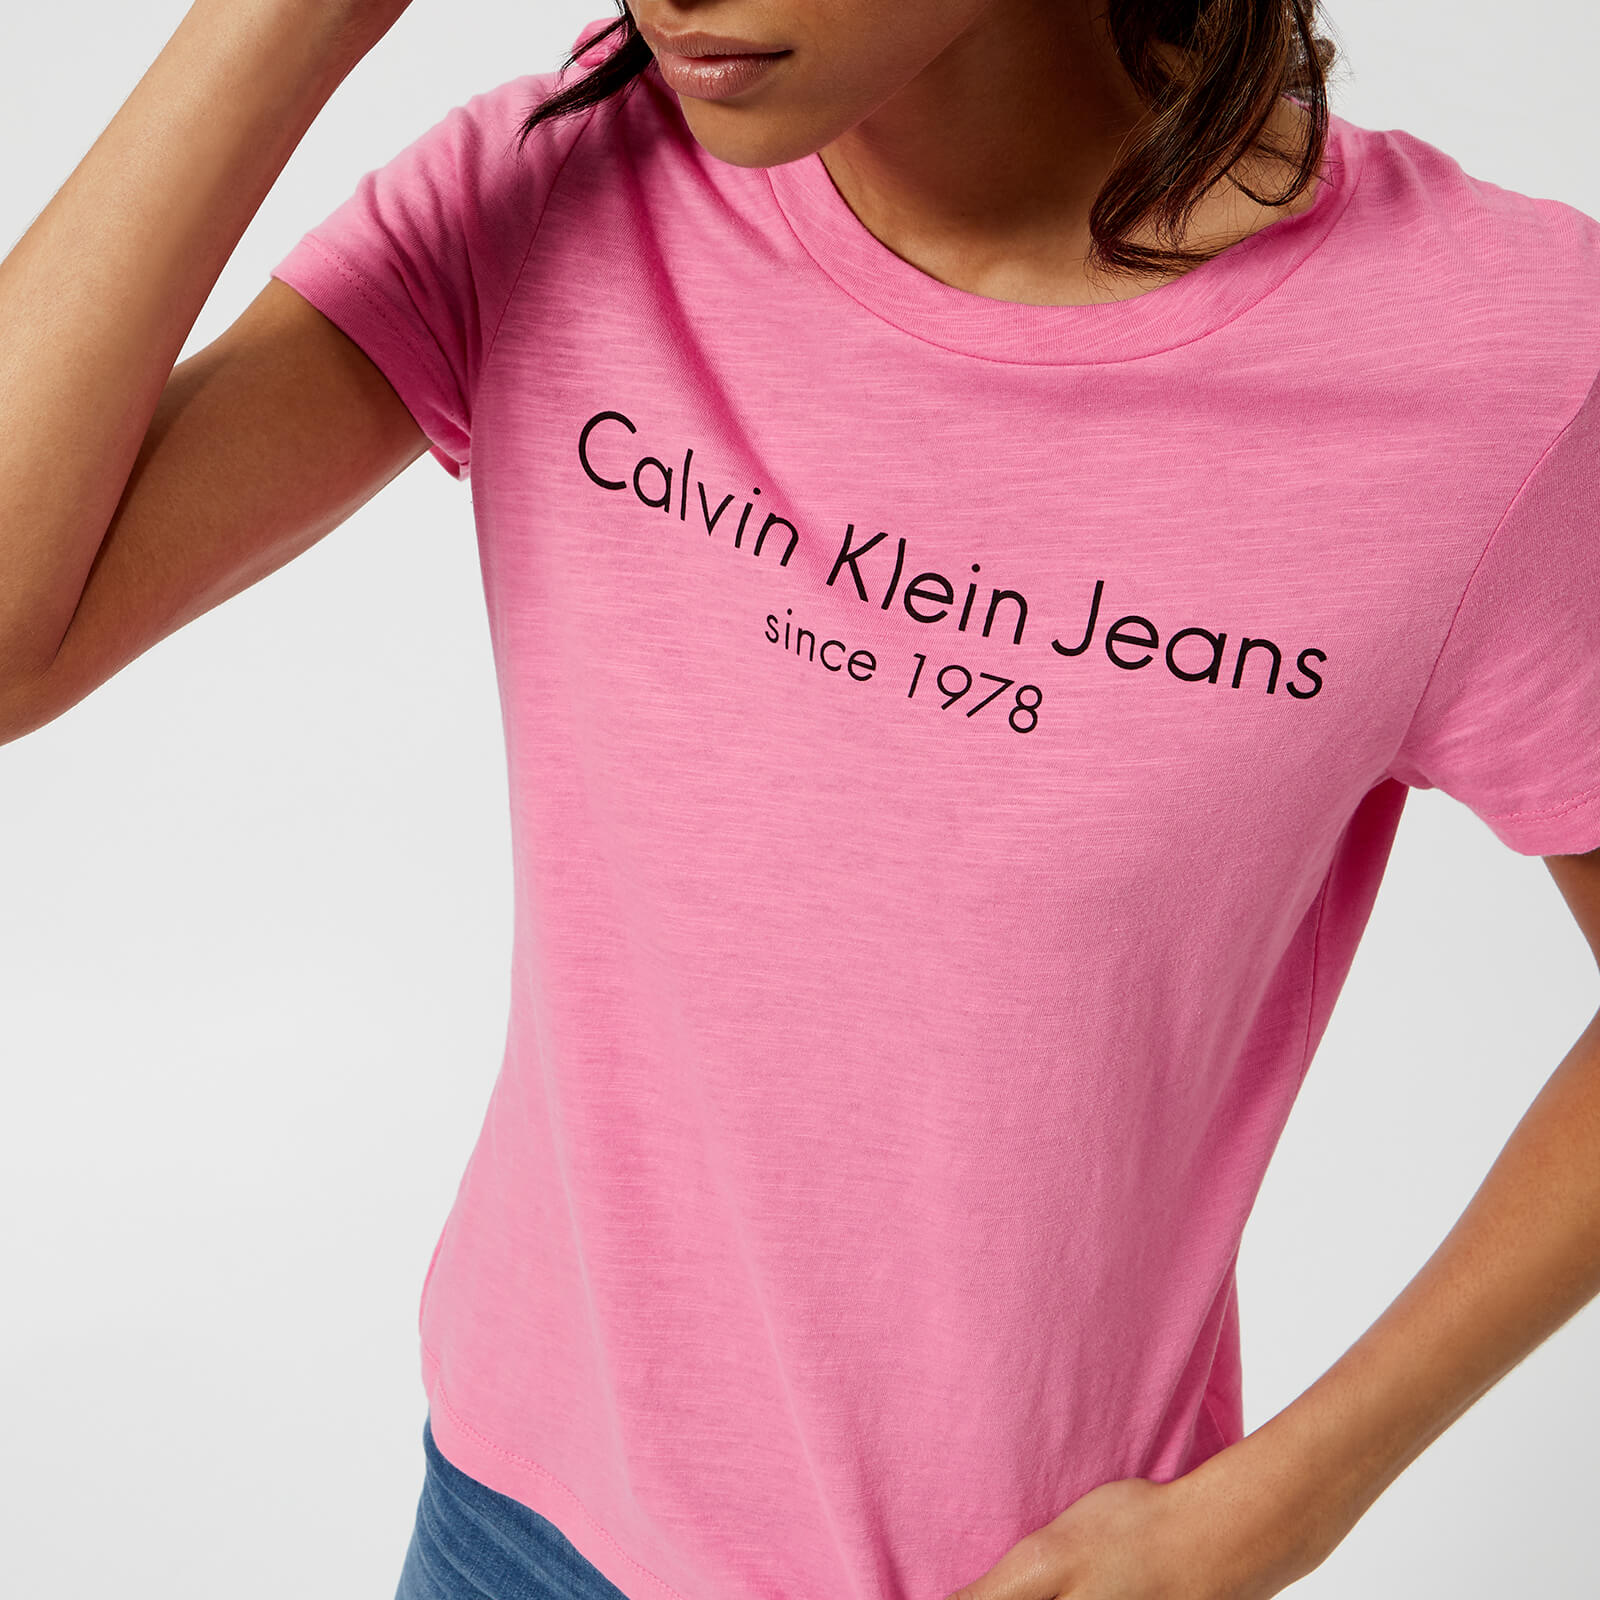 womens pink calvin klein t shirt